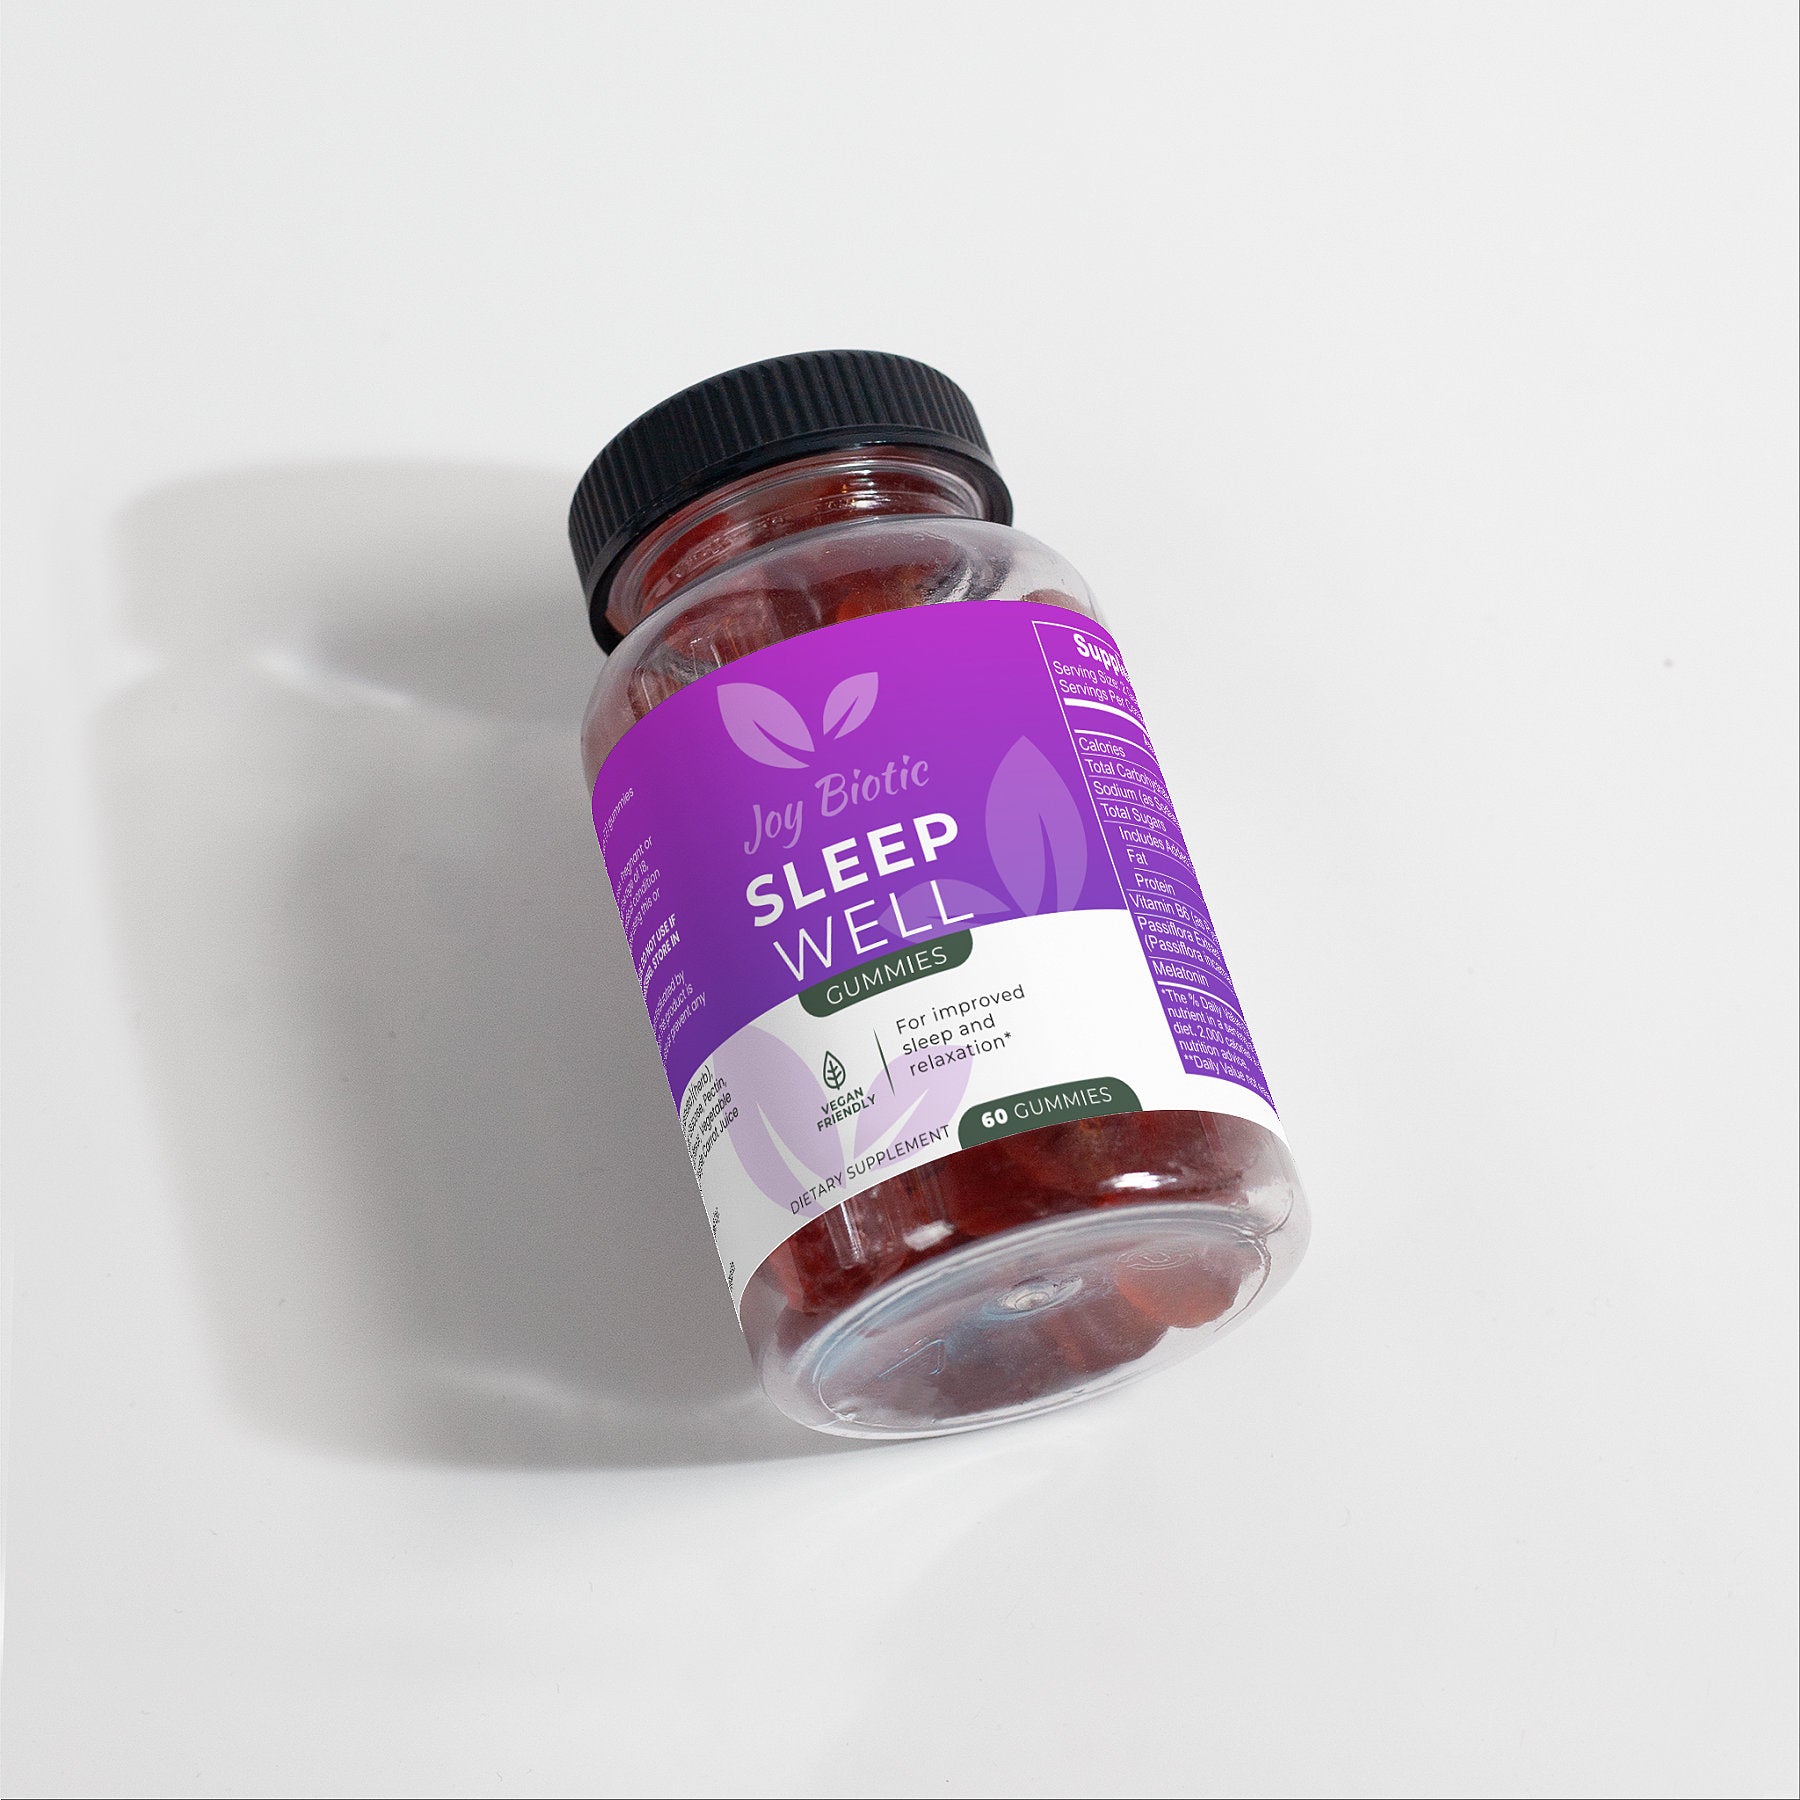 Sleep Gummies for Adults | Sleep Well Gummies | Joy Biotic